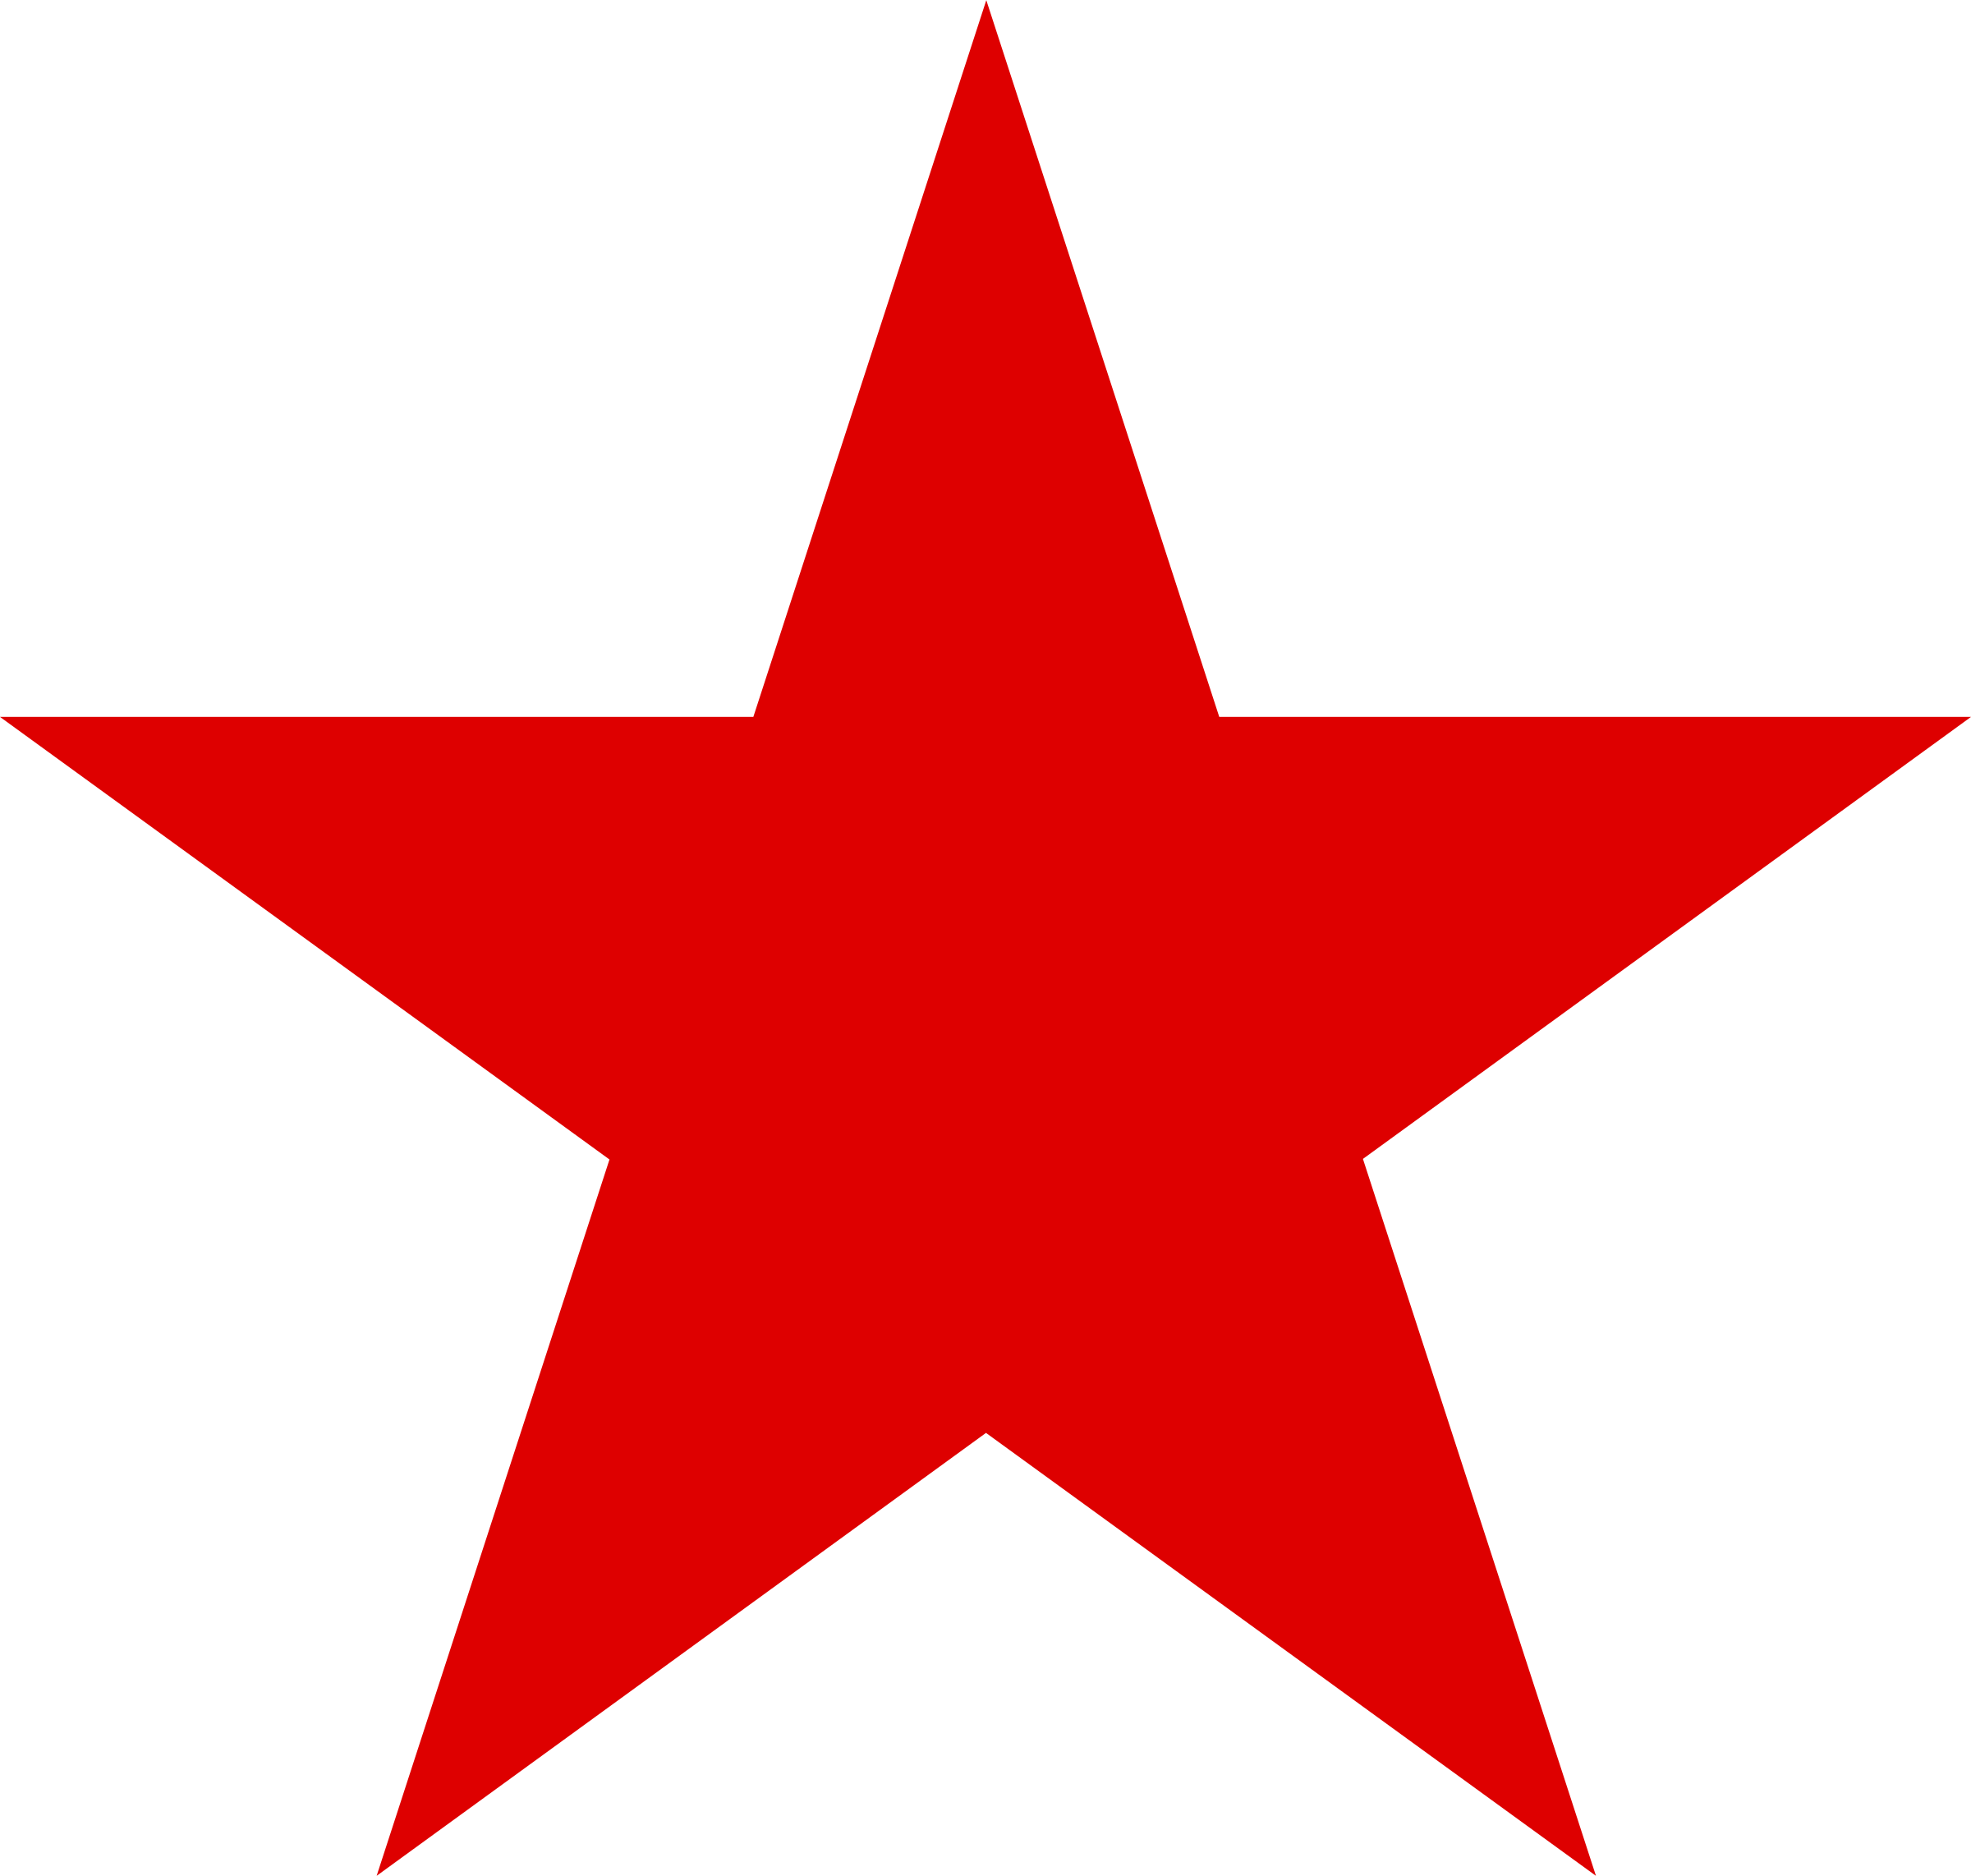 Star Logo - Red Star Logo PNG Transparent & SVG Vector